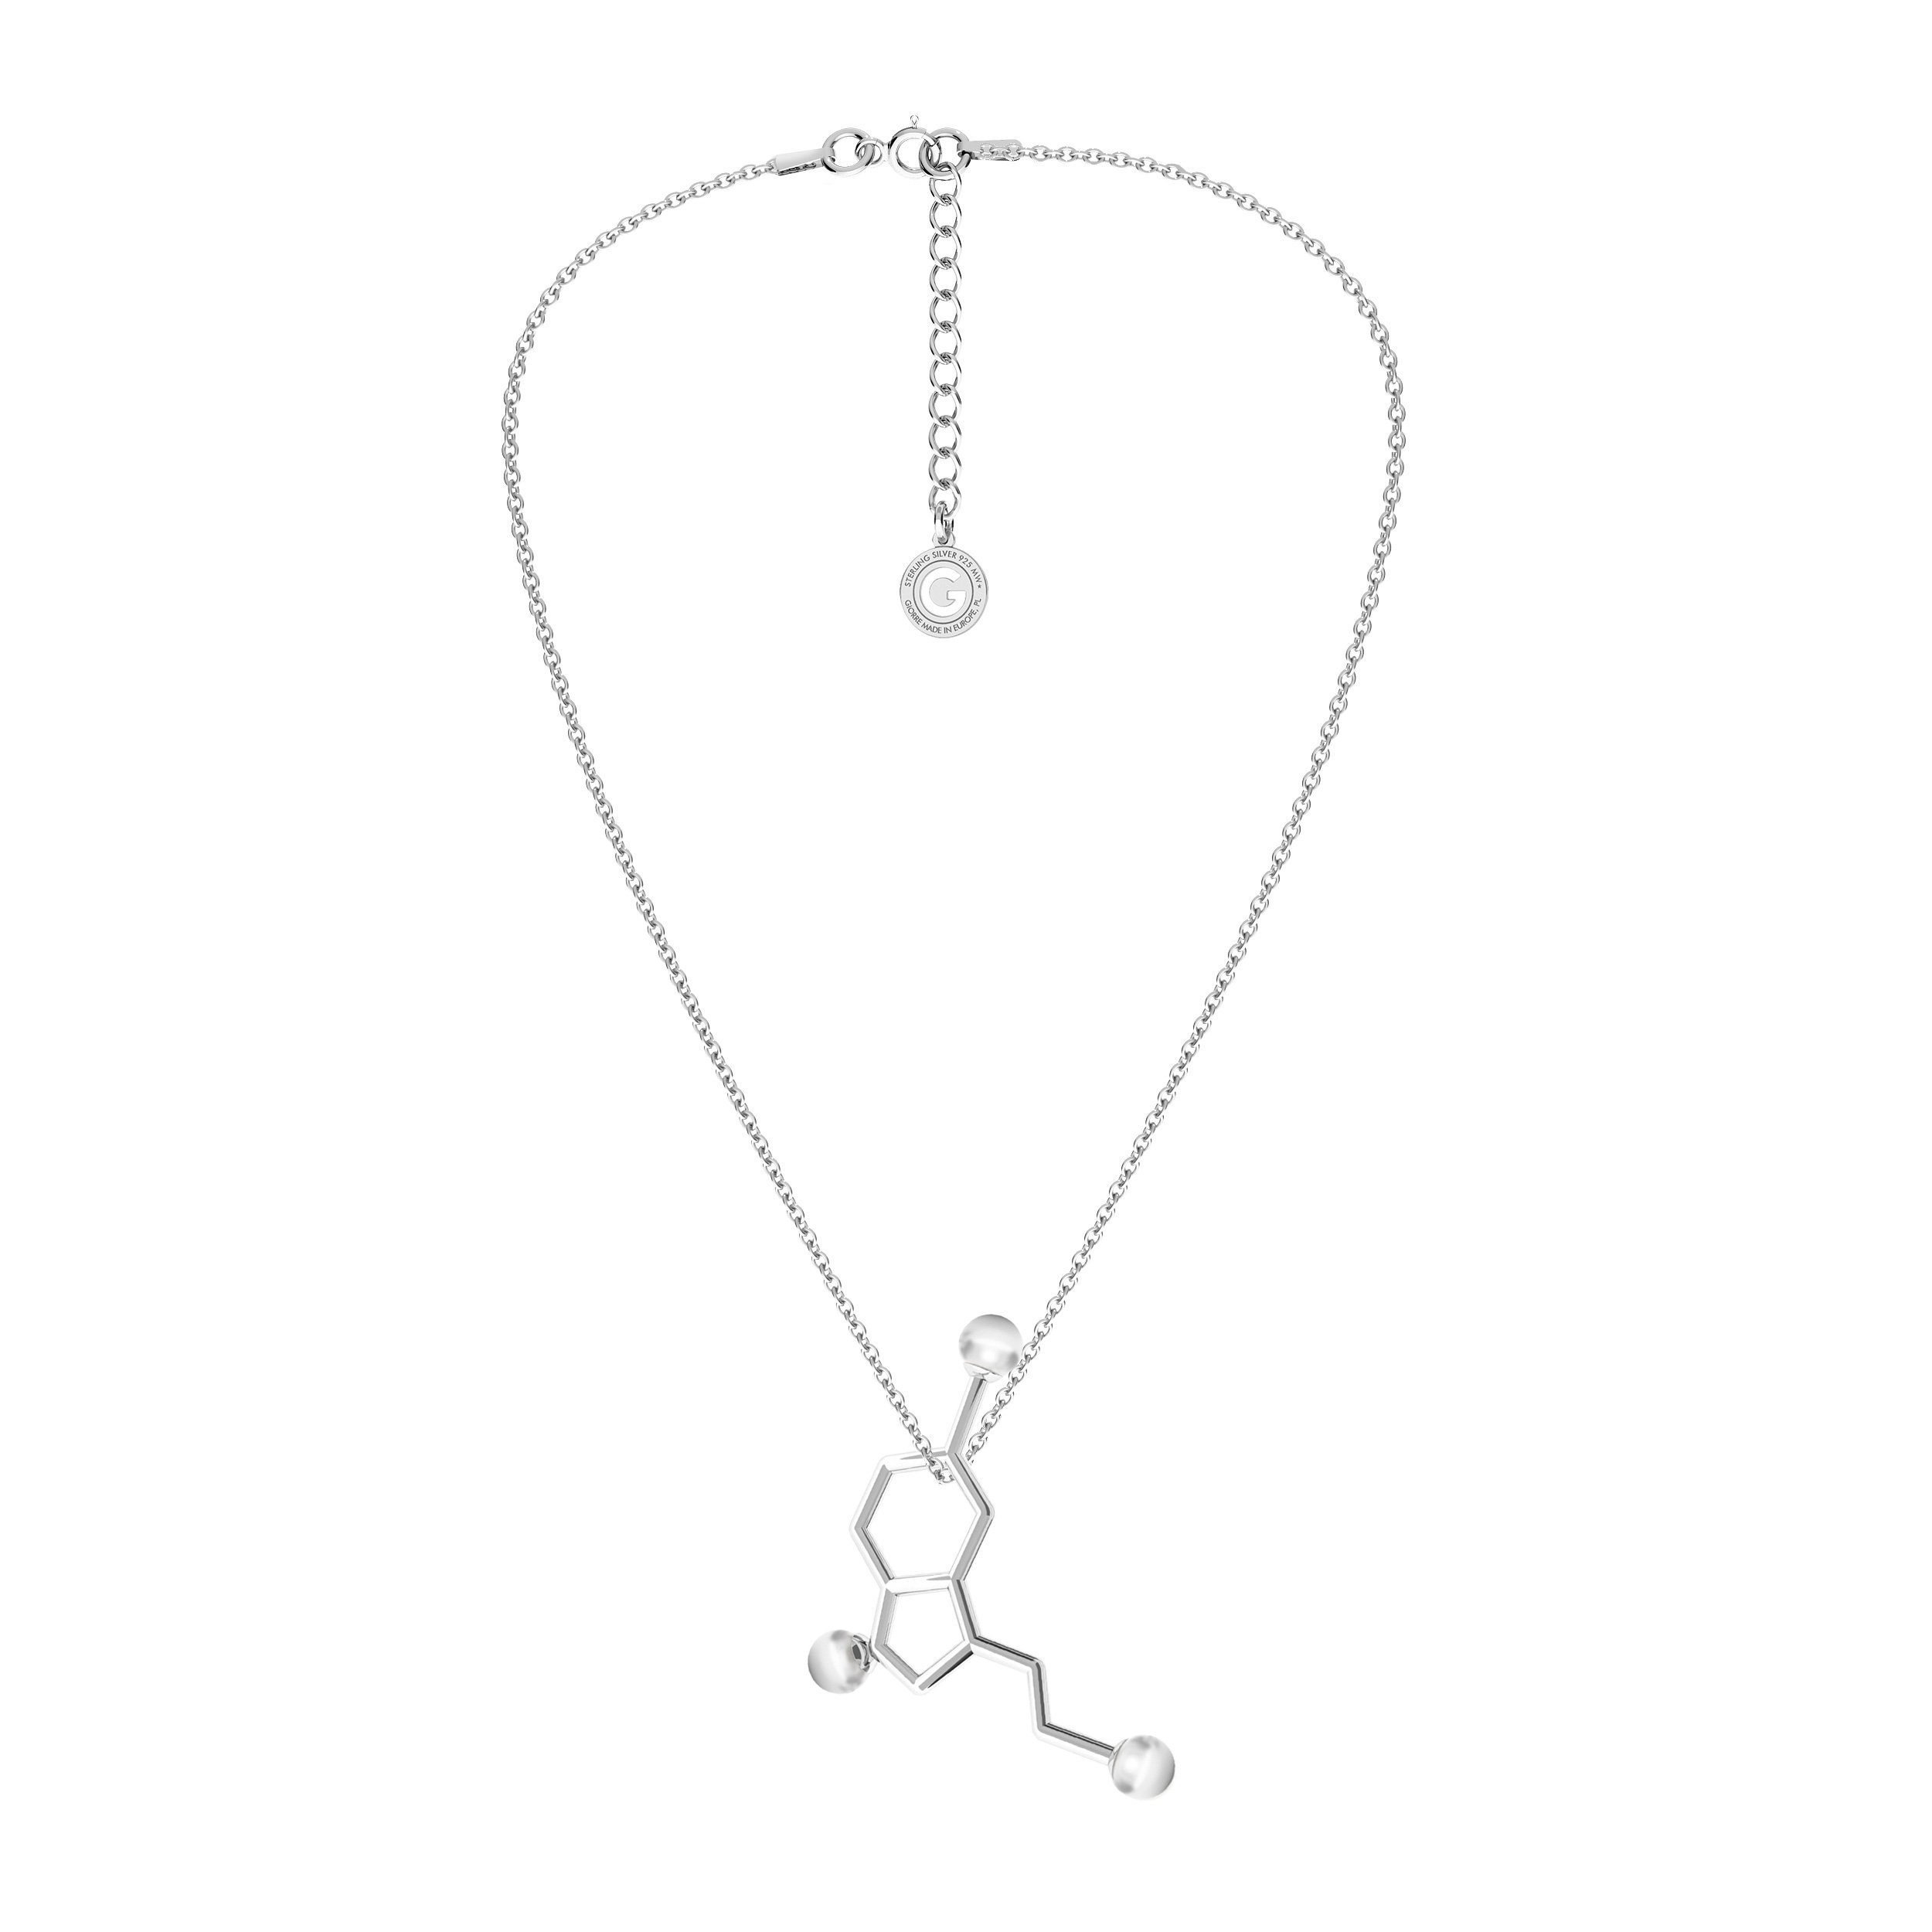 Halskette Serotonin mit Giorre Formel von der Kette mit Anhänger, chemischen